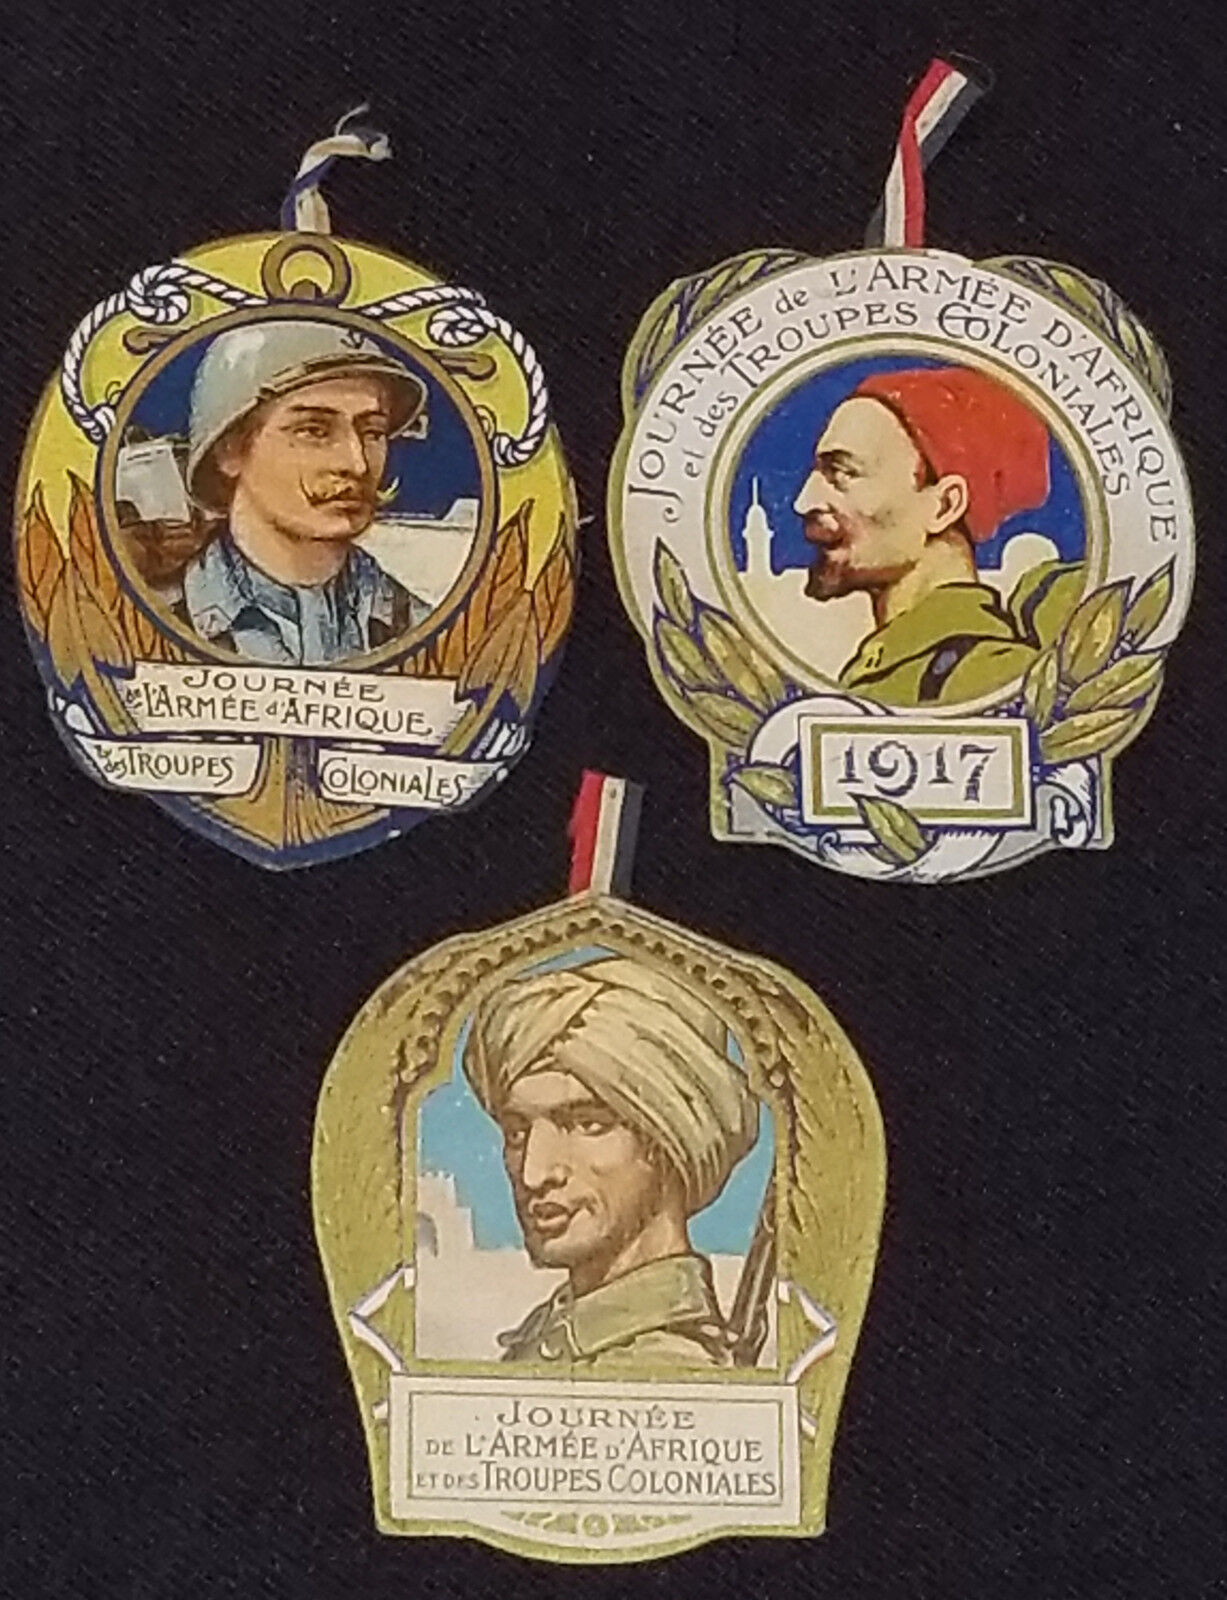 1917 - JOURNÉE DE L'ARMÉE D'AFRIQUE ET DES TROUPES COLONIALS - SOUVENIR CARD (3)